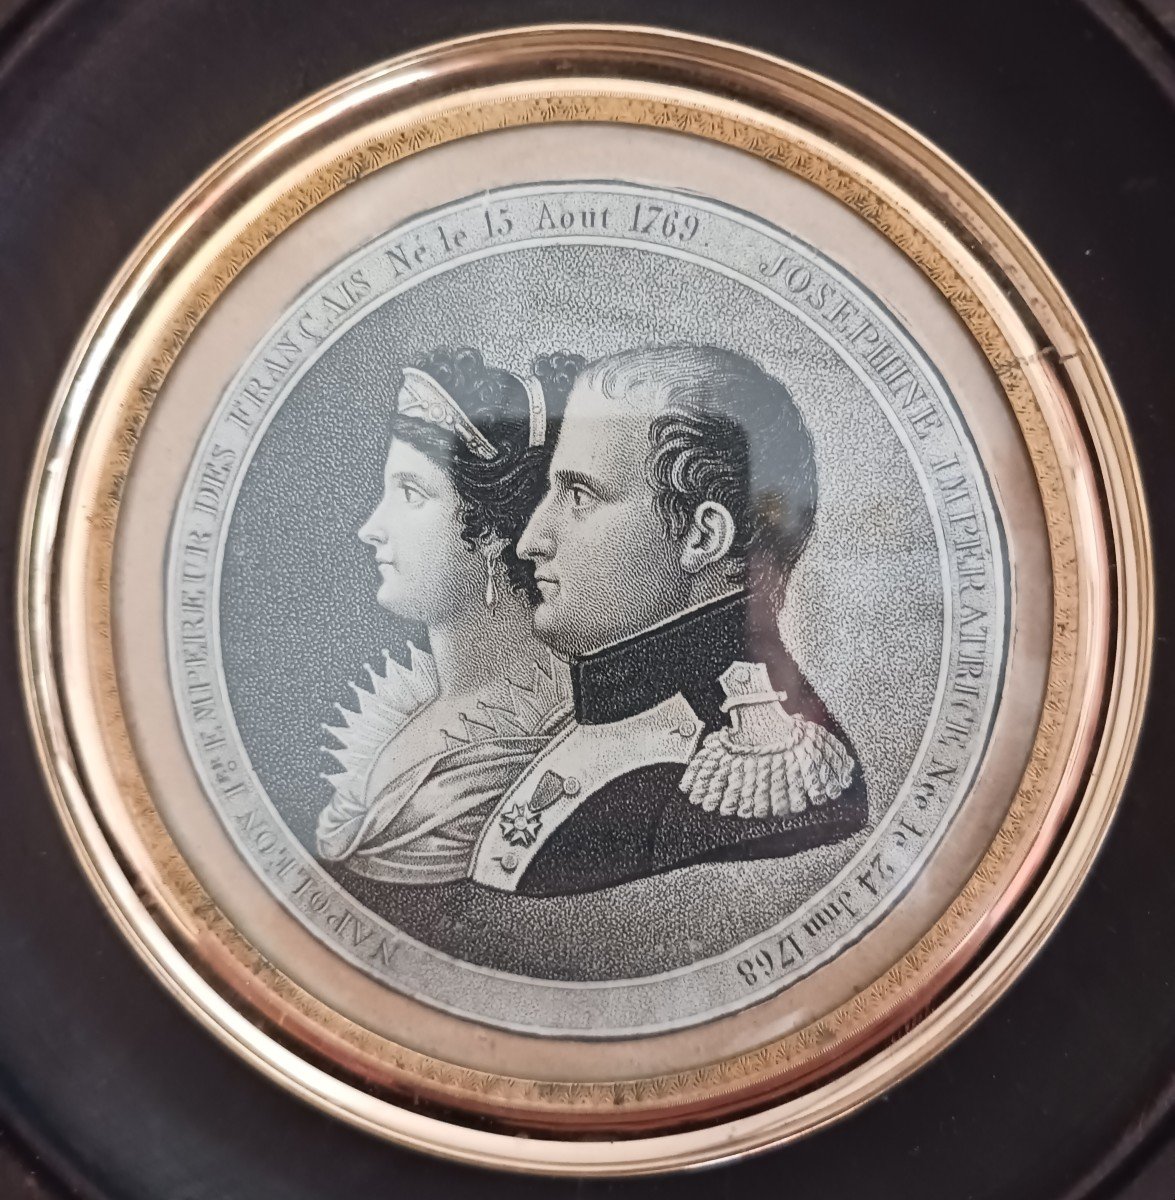 France début XIXe siècle - gravure en médaillon - Napoléon et Joséphine - souvenir historique-photo-4